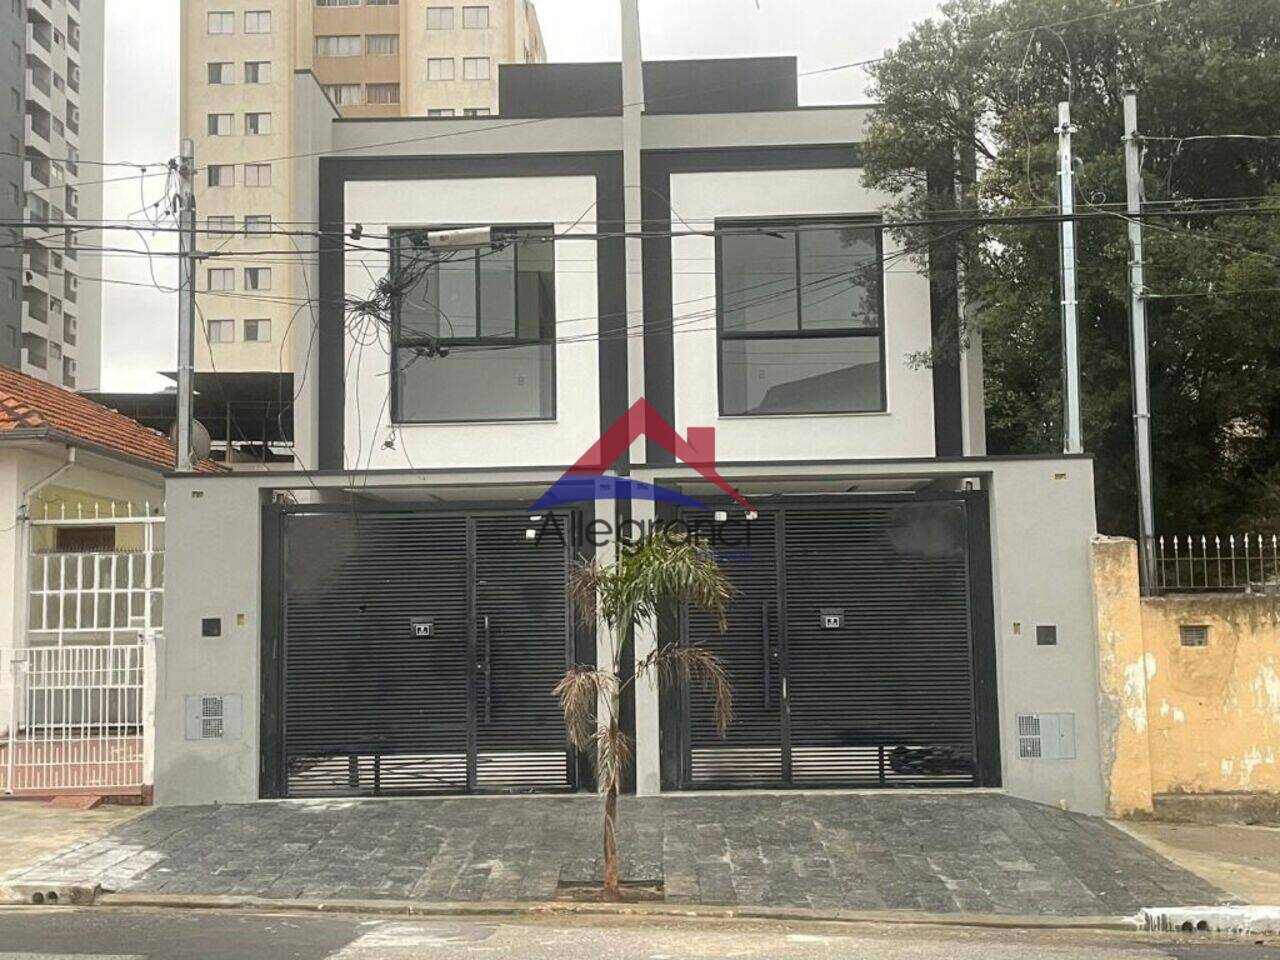 Casa Vila Carrão, São Paulo - SP